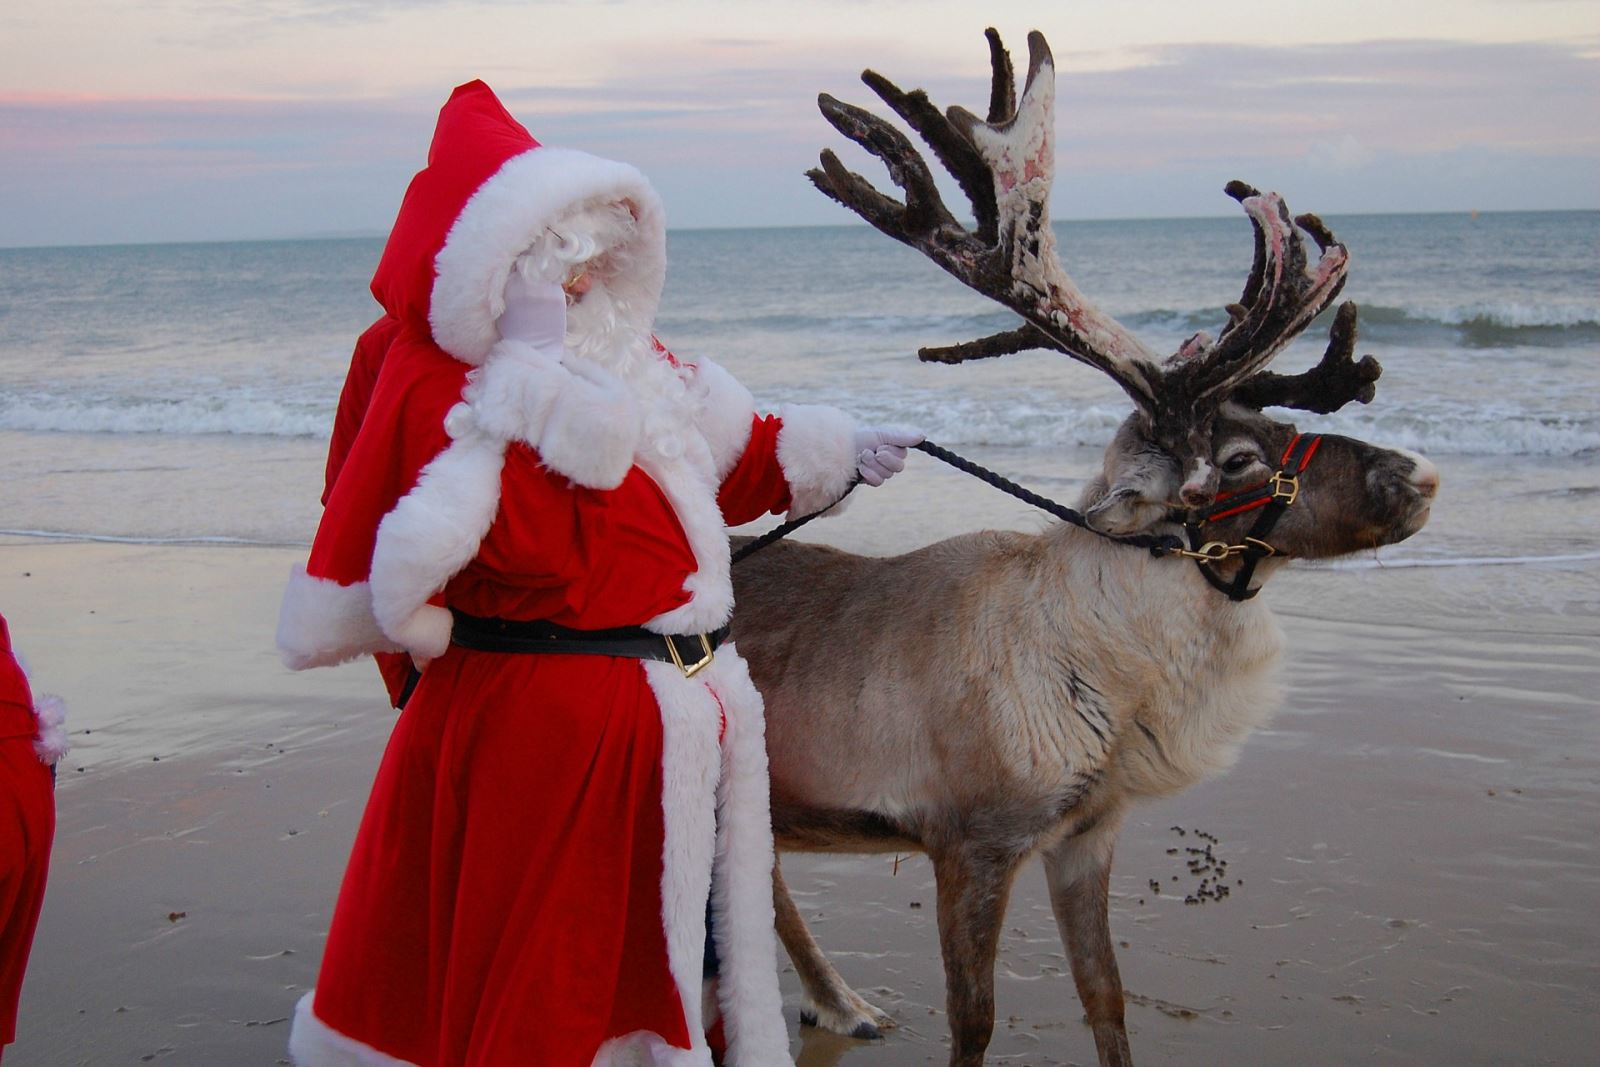 Santa Claus on Poole beach with a healthy reindeer and a dusky sky